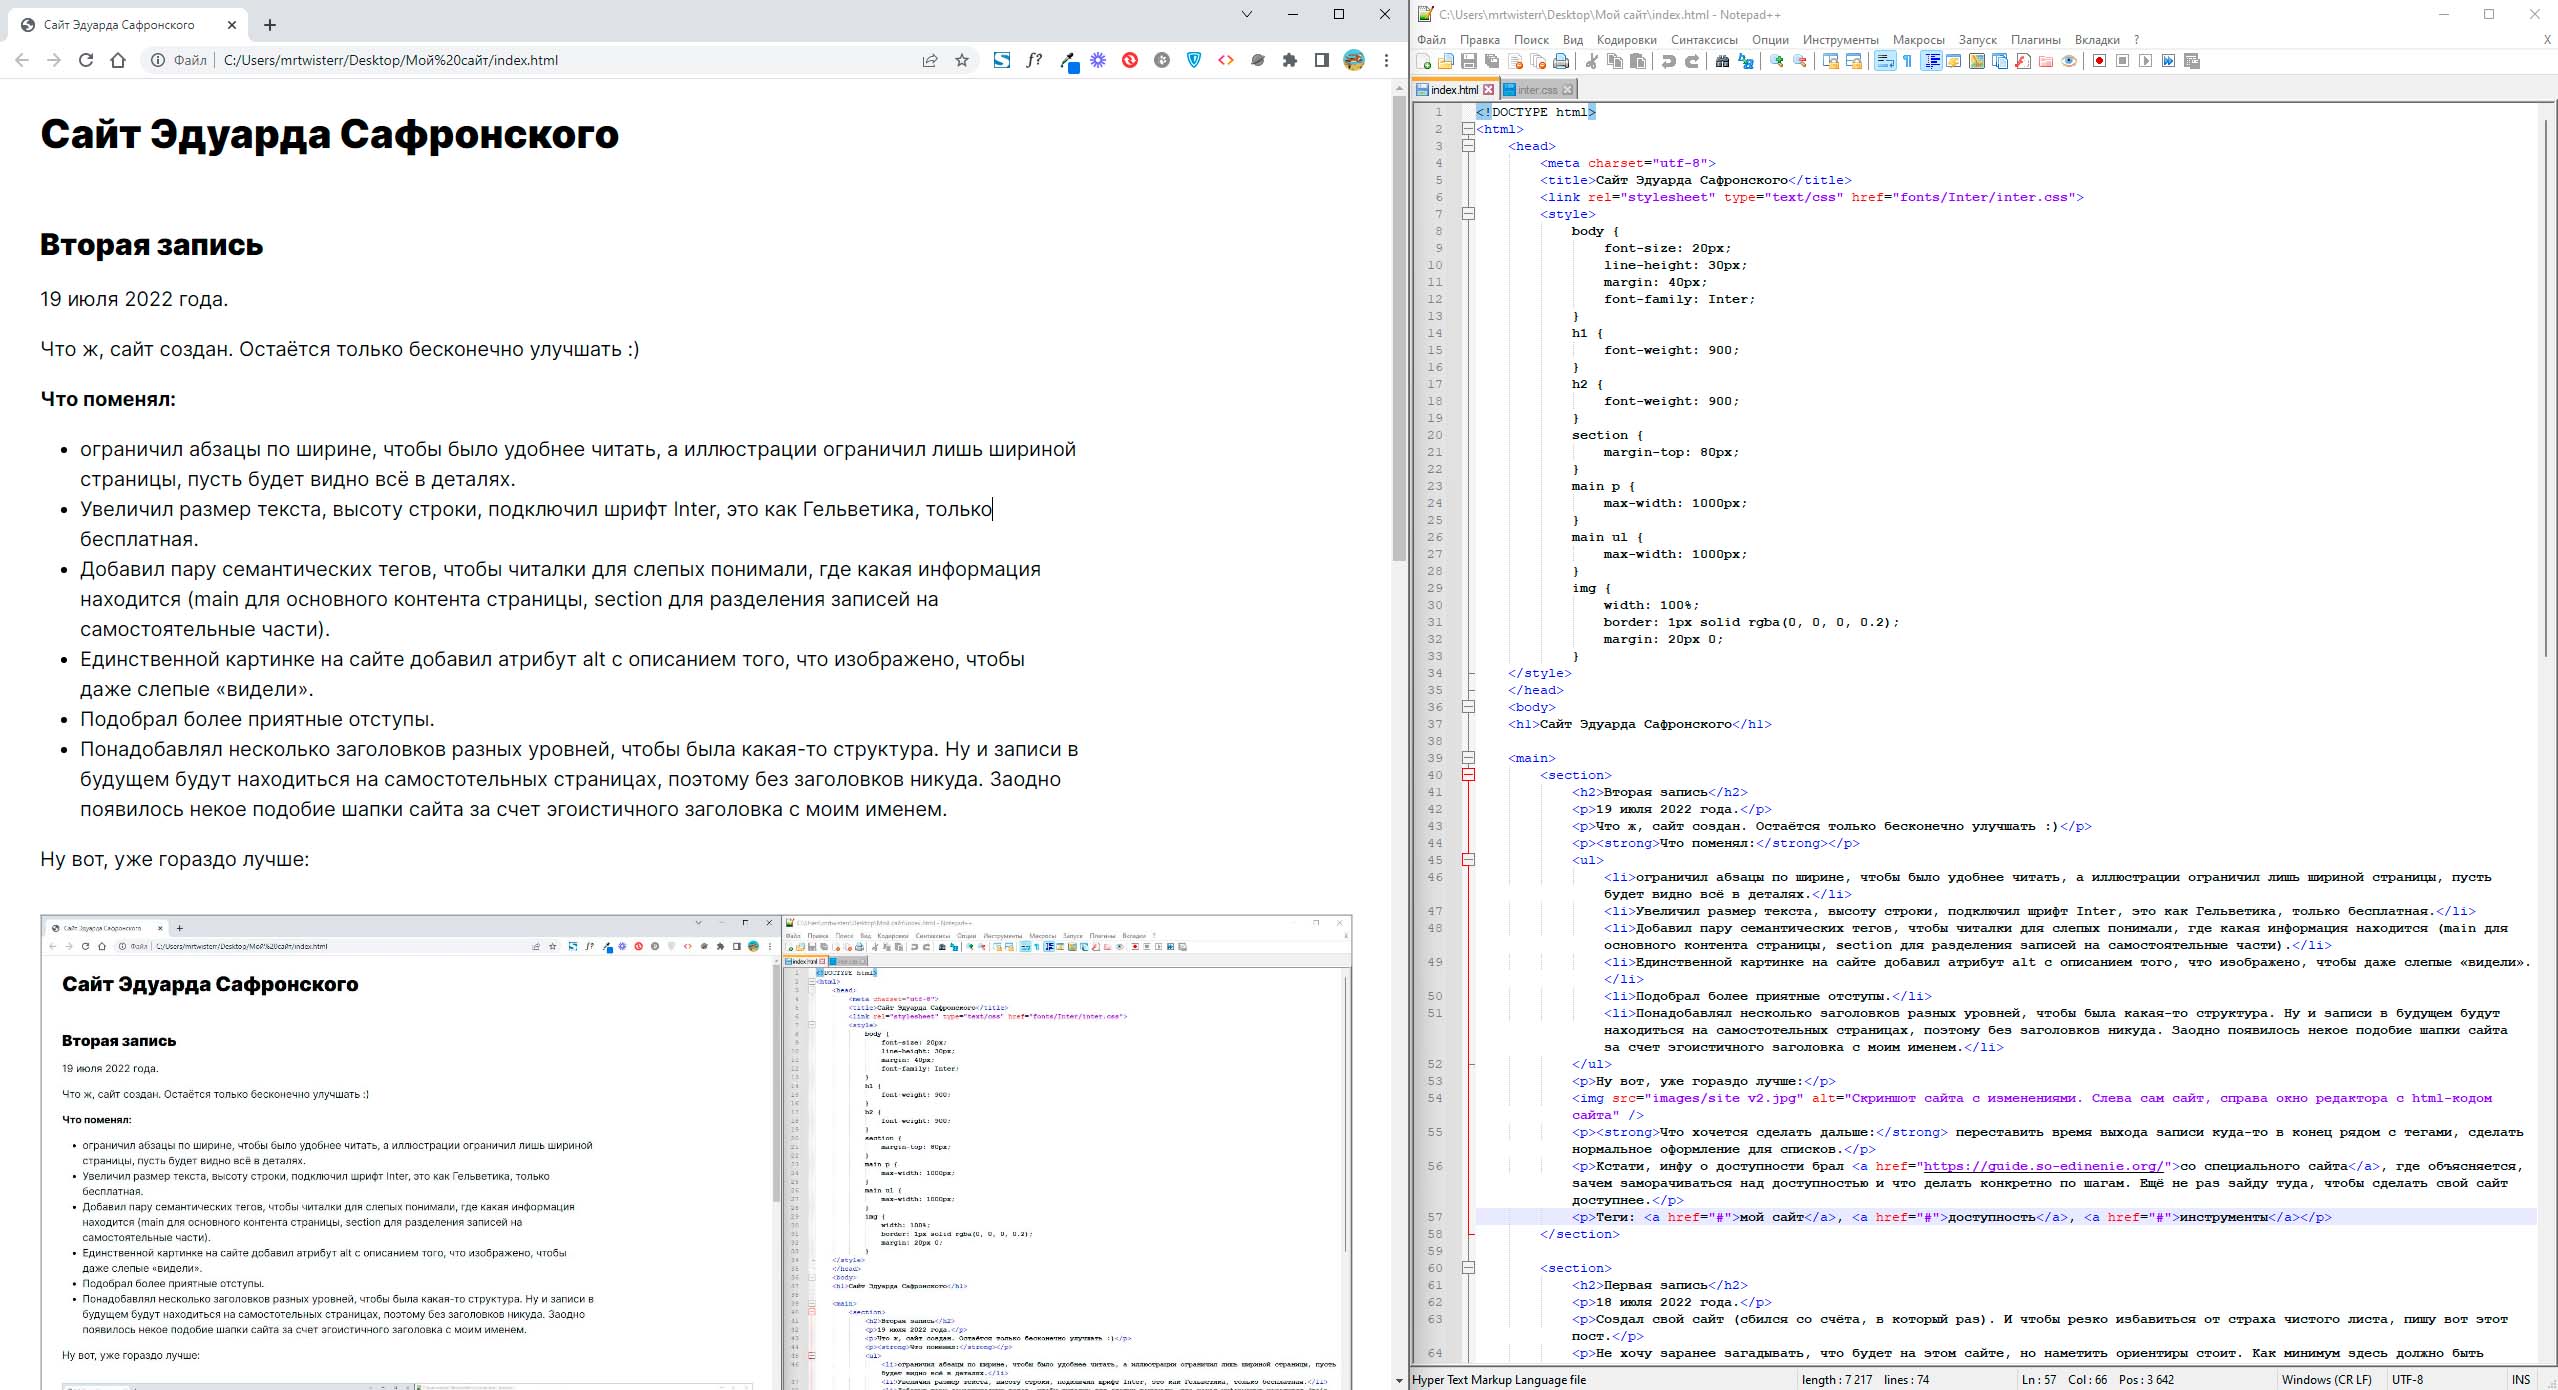 Скриншот сайта с изменениями. Слева сам сайт, справа окно редактора с html-кодом сайта